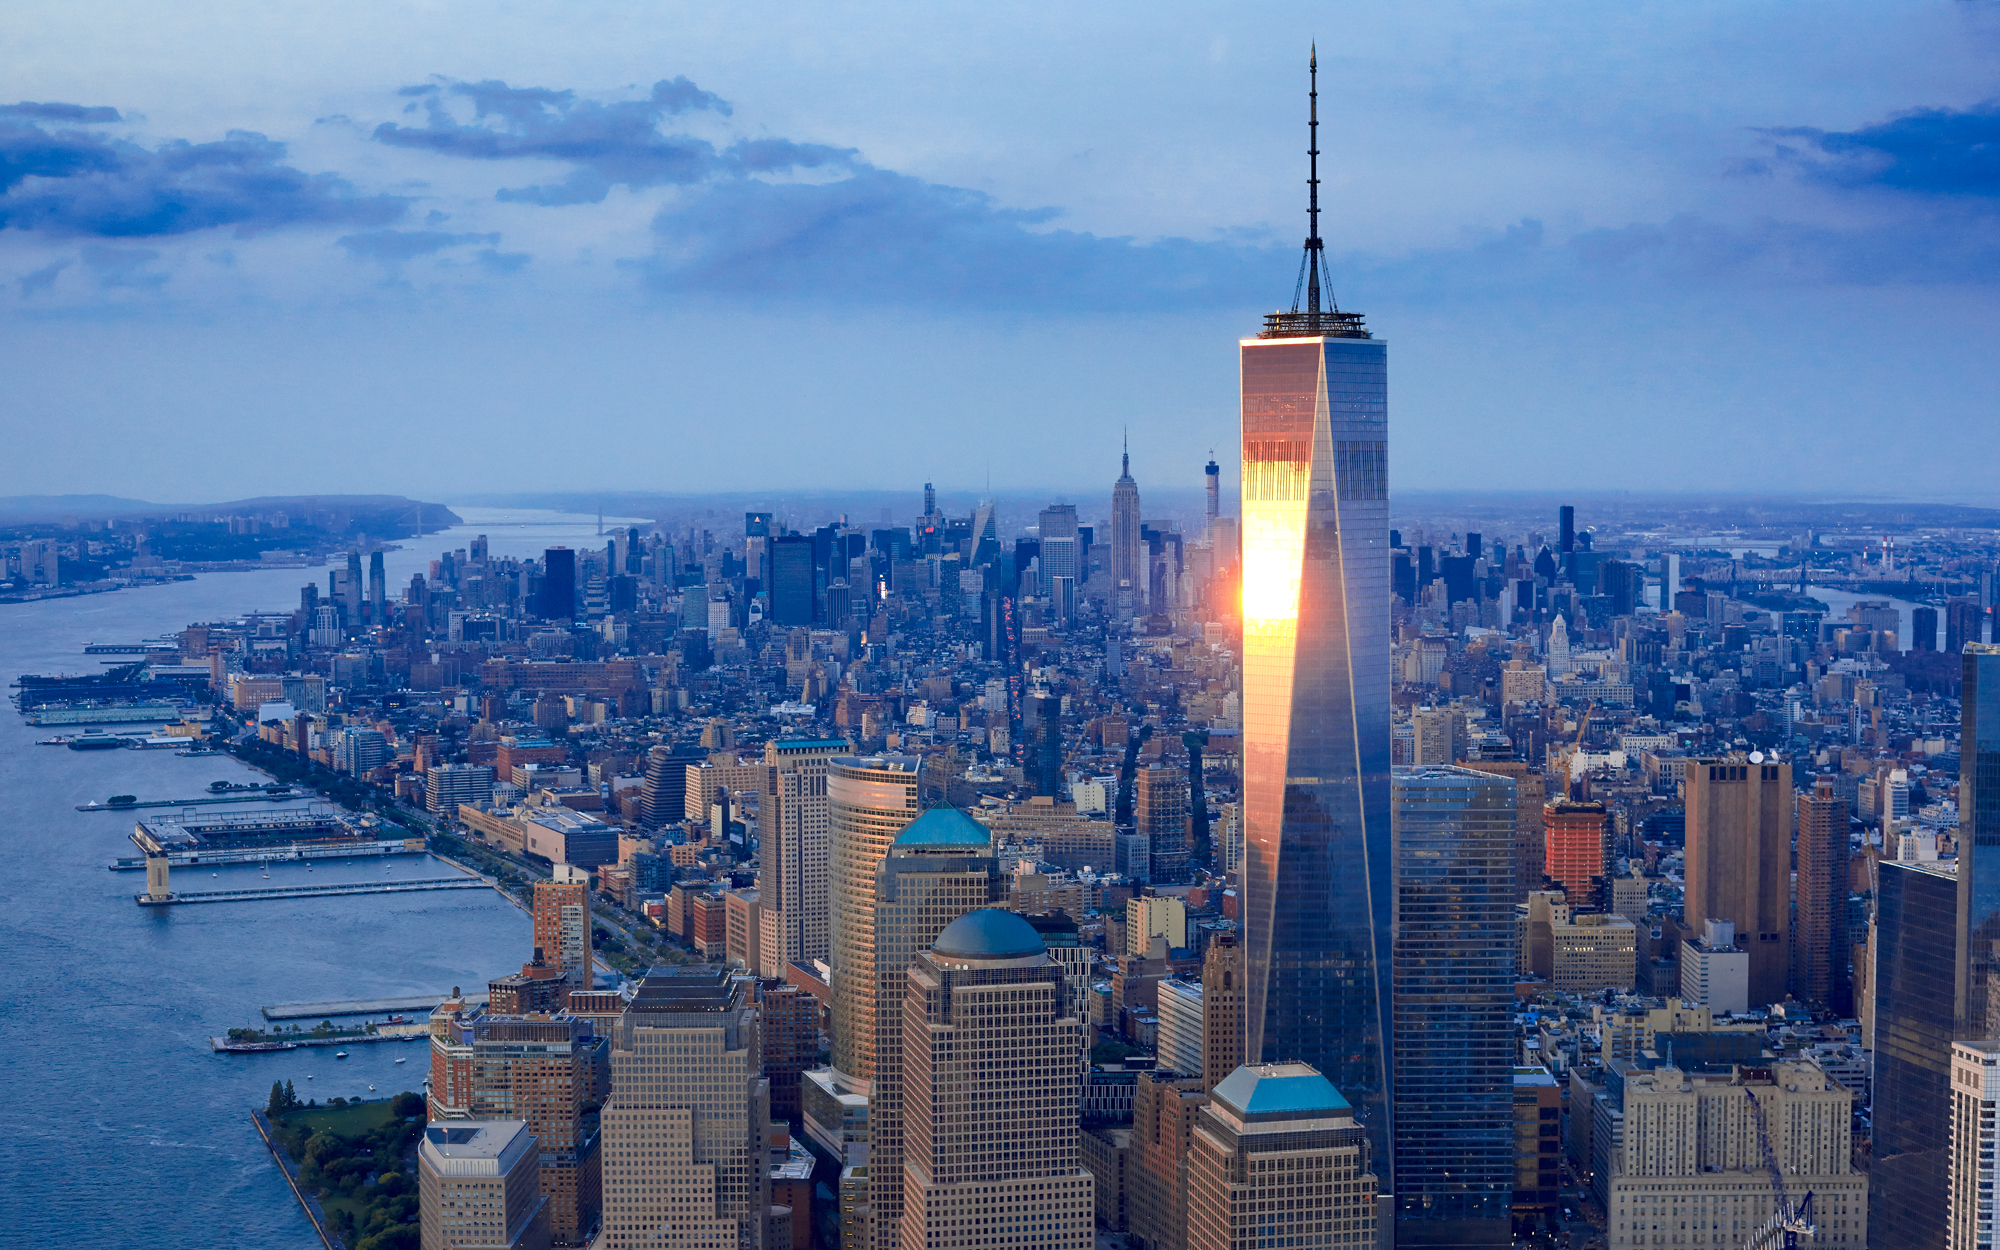 Building better worlds. Башня свободы в Нью-Йорке. Всемирный торговый центр 1 Нью-Йорк. Всемирный торговый центр 1 (541 м). Нью-Йорк, США. Башня свободы Манхэттен.